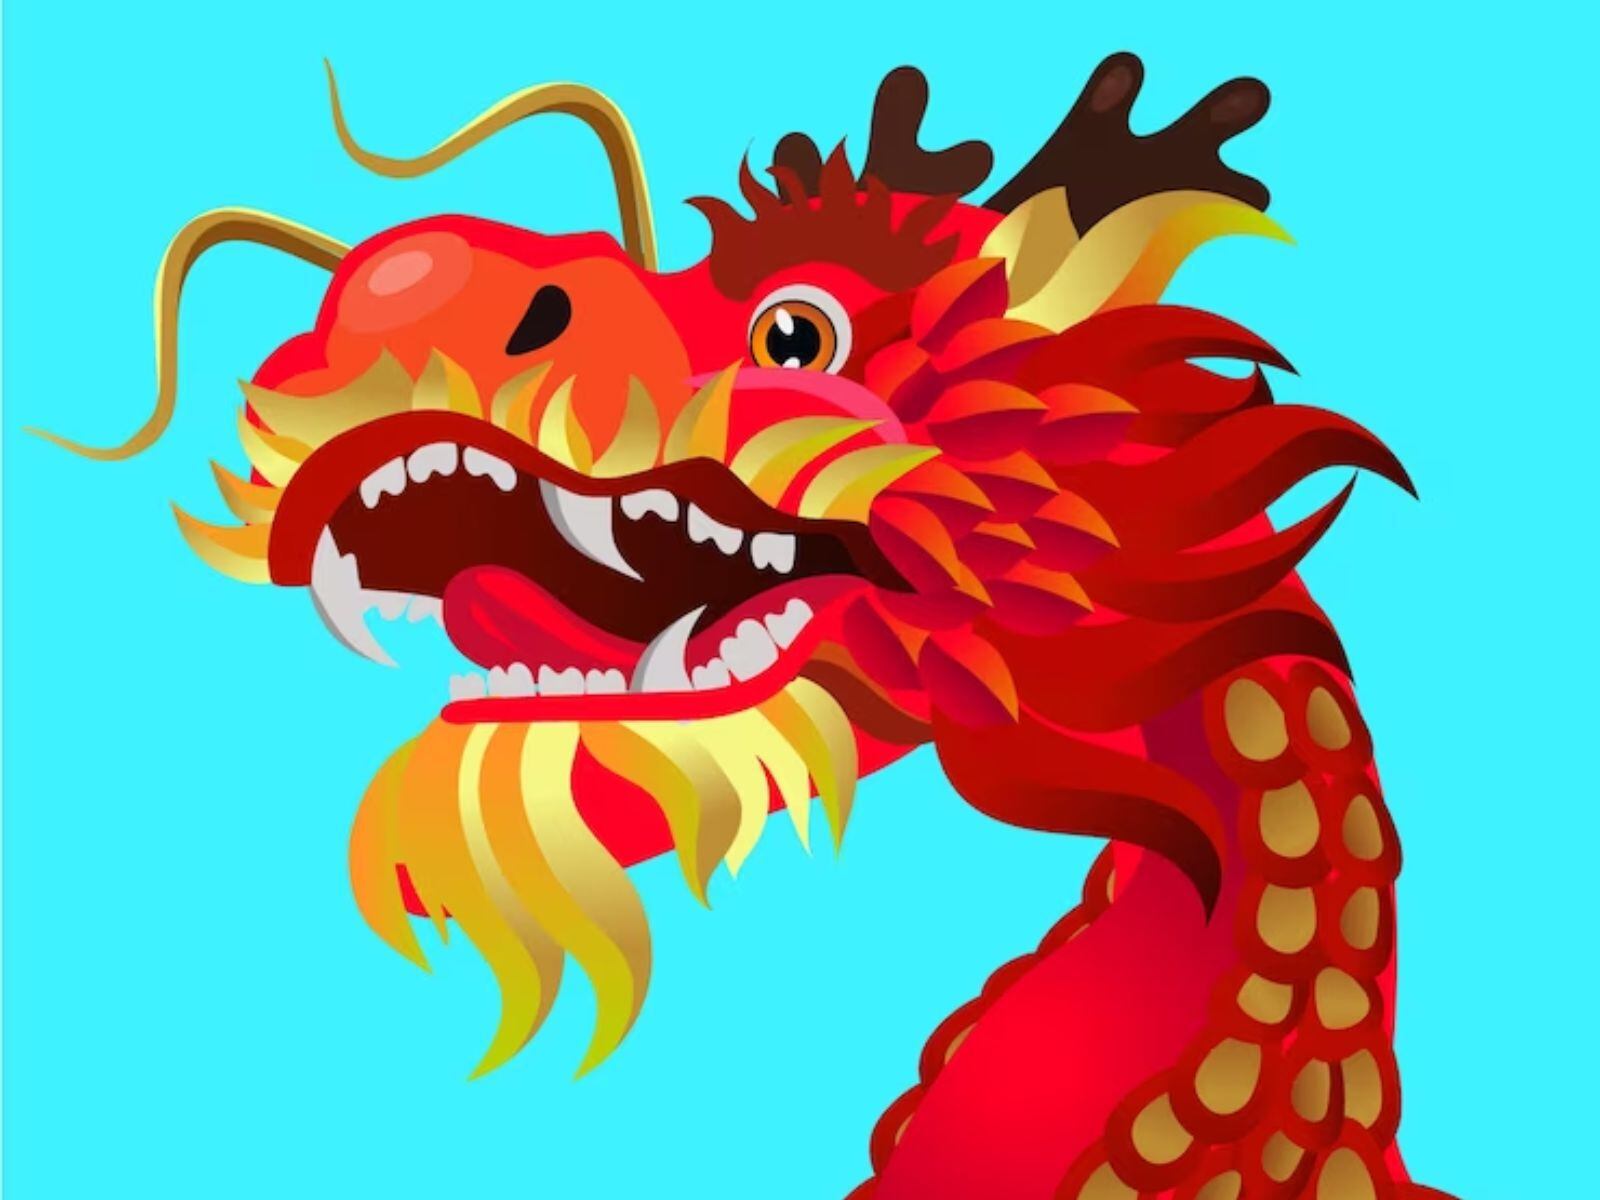 El Dragón es la única criatura mítica del horóscopo chino (Foto: Freepik)